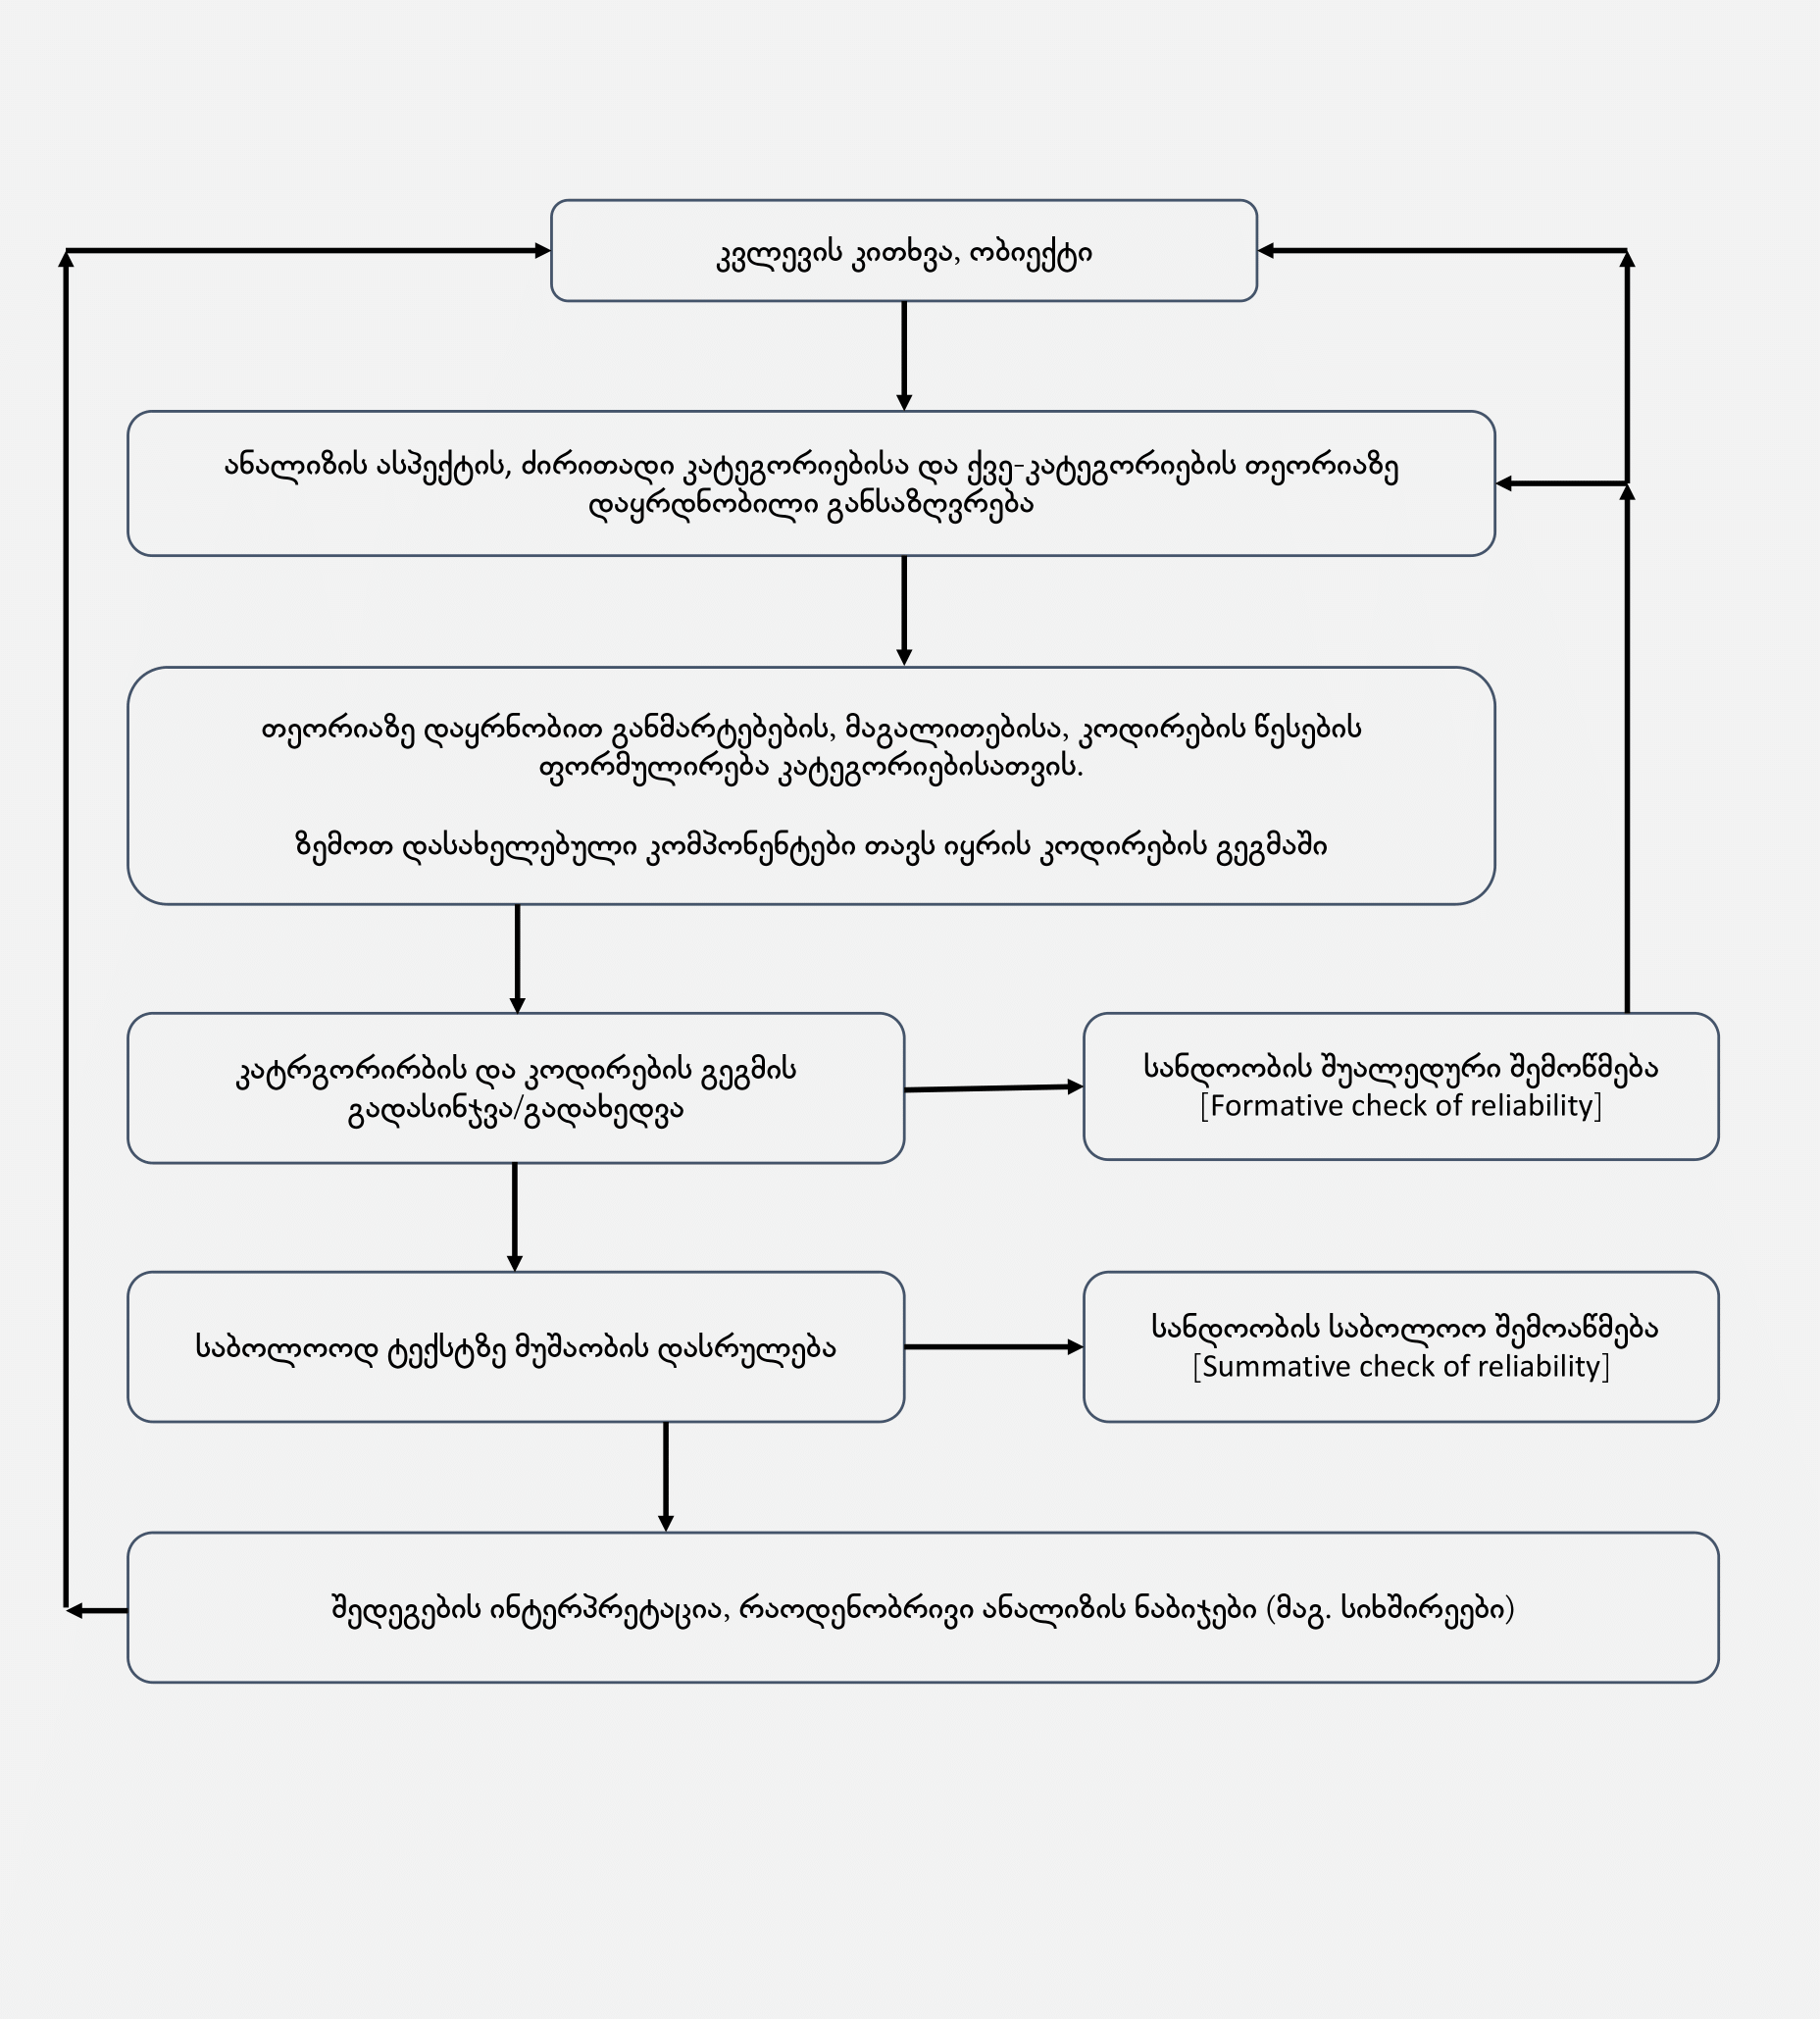 ილუსტრაცია 2. დედუქციური კატეგორიის გამოყენების ეტაპებიანი მოდელი (Mayring 2000)